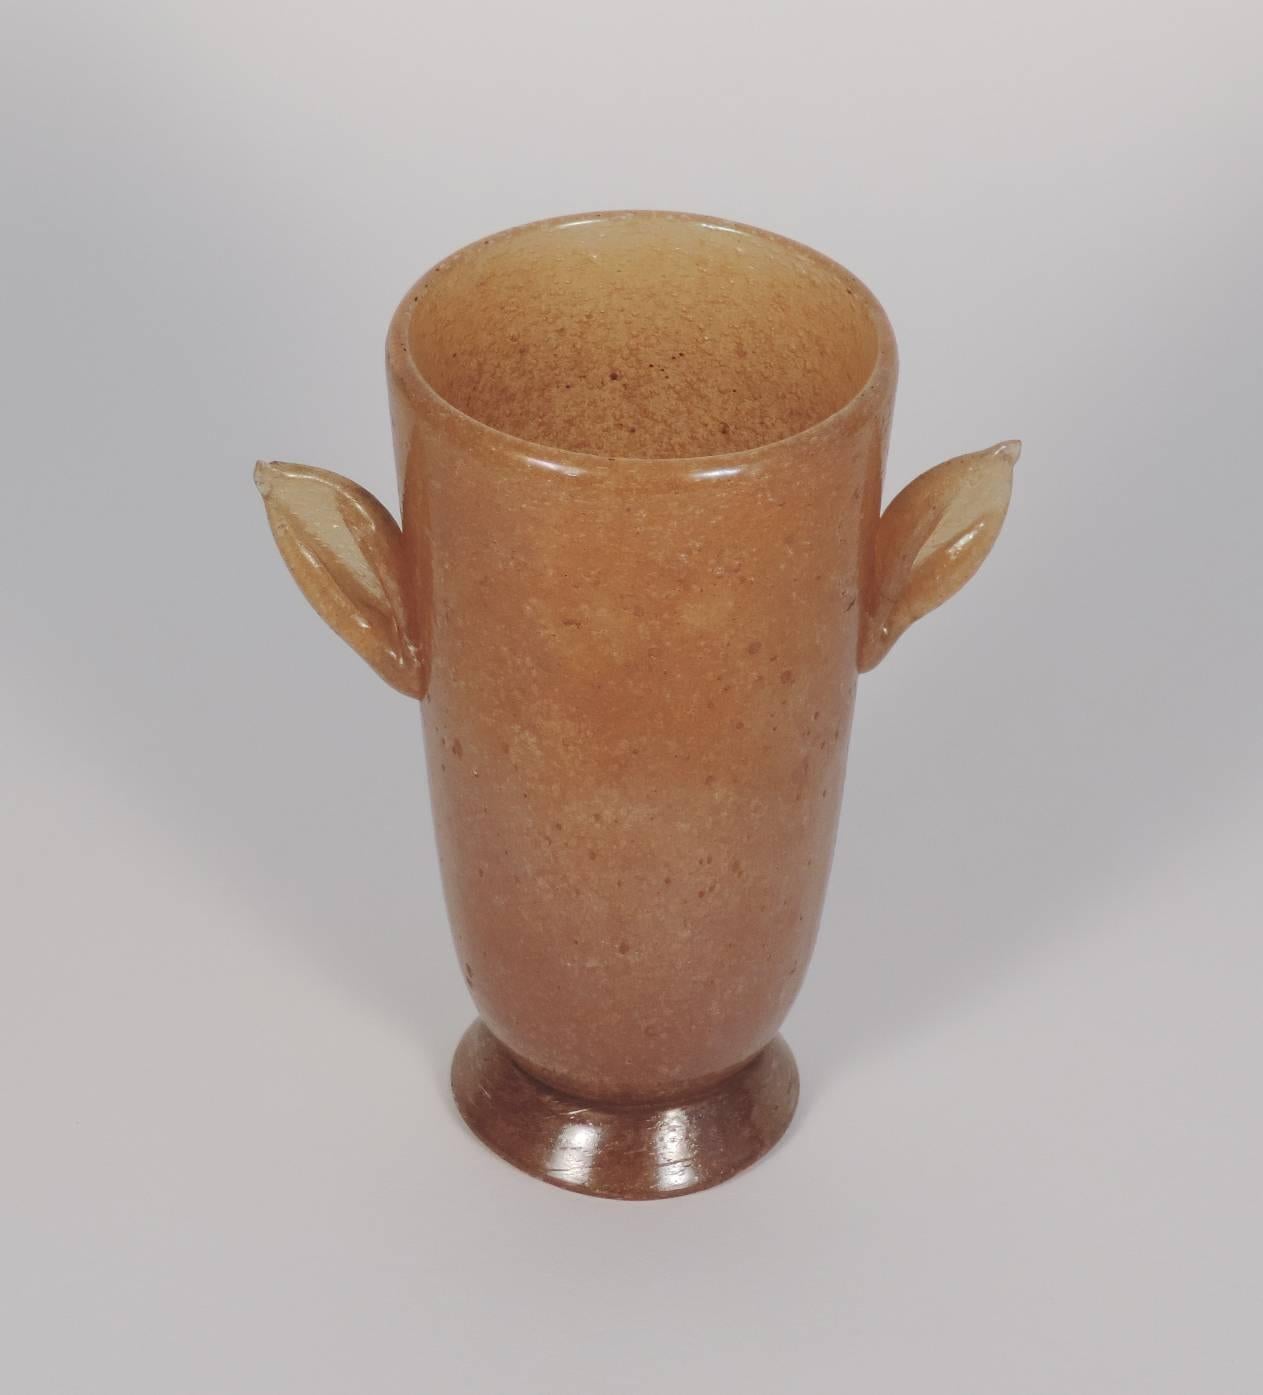 Vittorio Zecchin for A.VE.M.
Pulegoso glass vase.
Ref: Domus No.83 Nov. 1934 p.26.